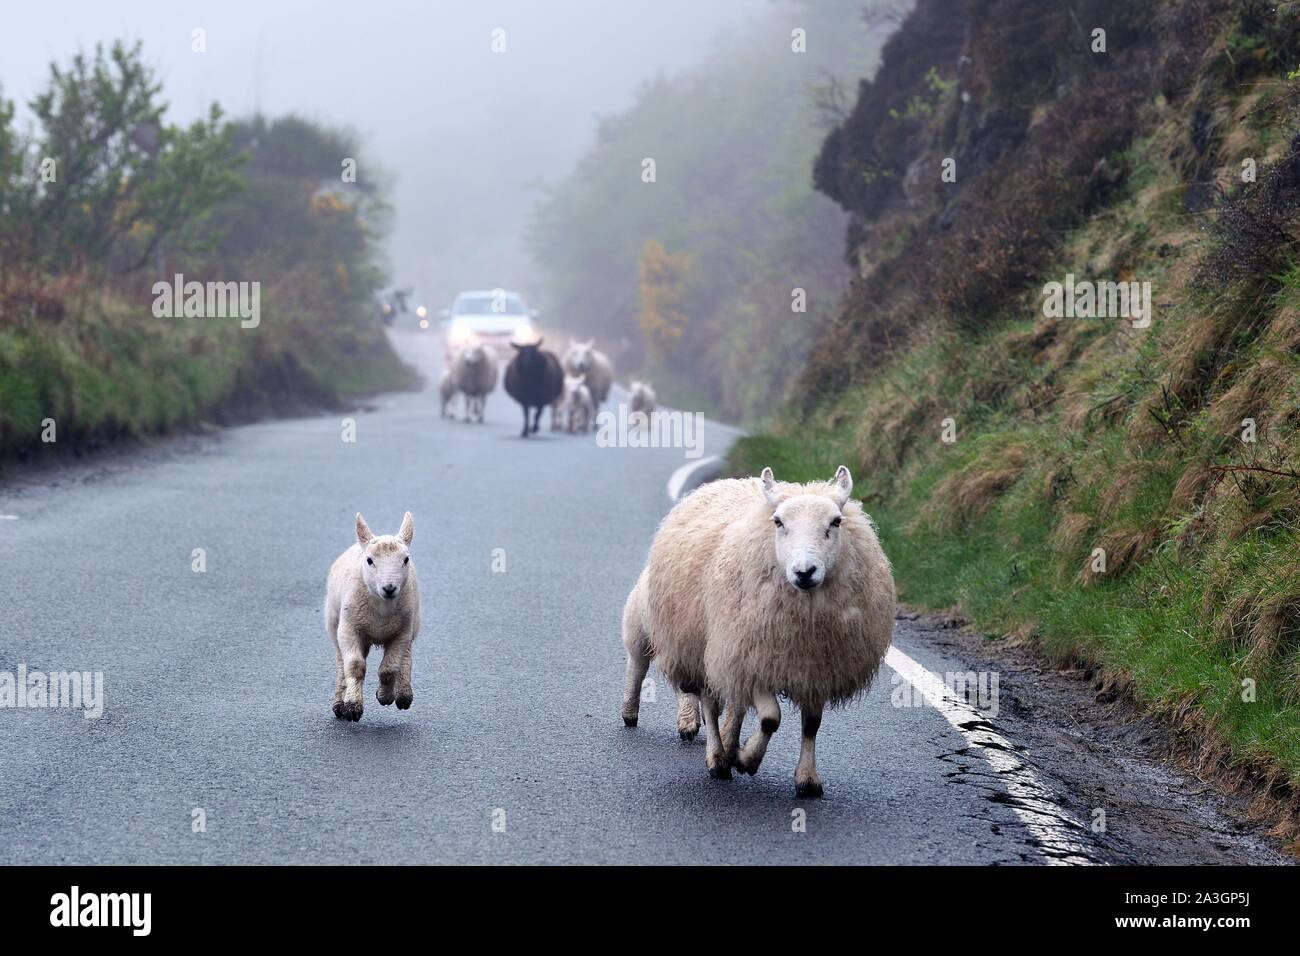 United Kingdom, Scotland, Highlands, Hebrides, Isle of Skye, Uig, sheep galloping on the road Stock Photo